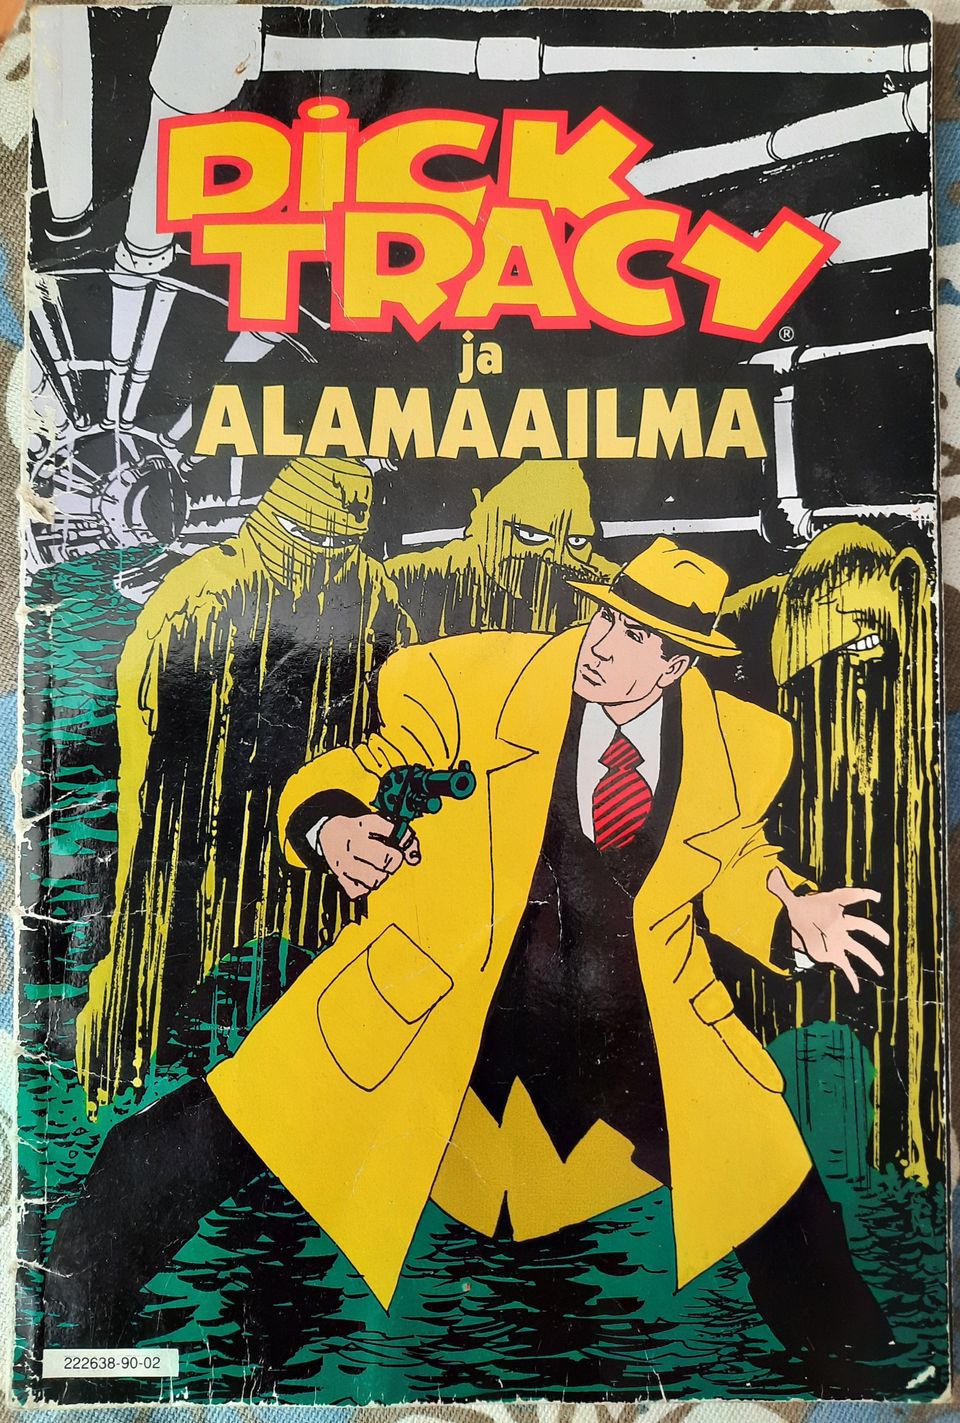 Dick Tracy ja Alamaailma sarjakuvalehti